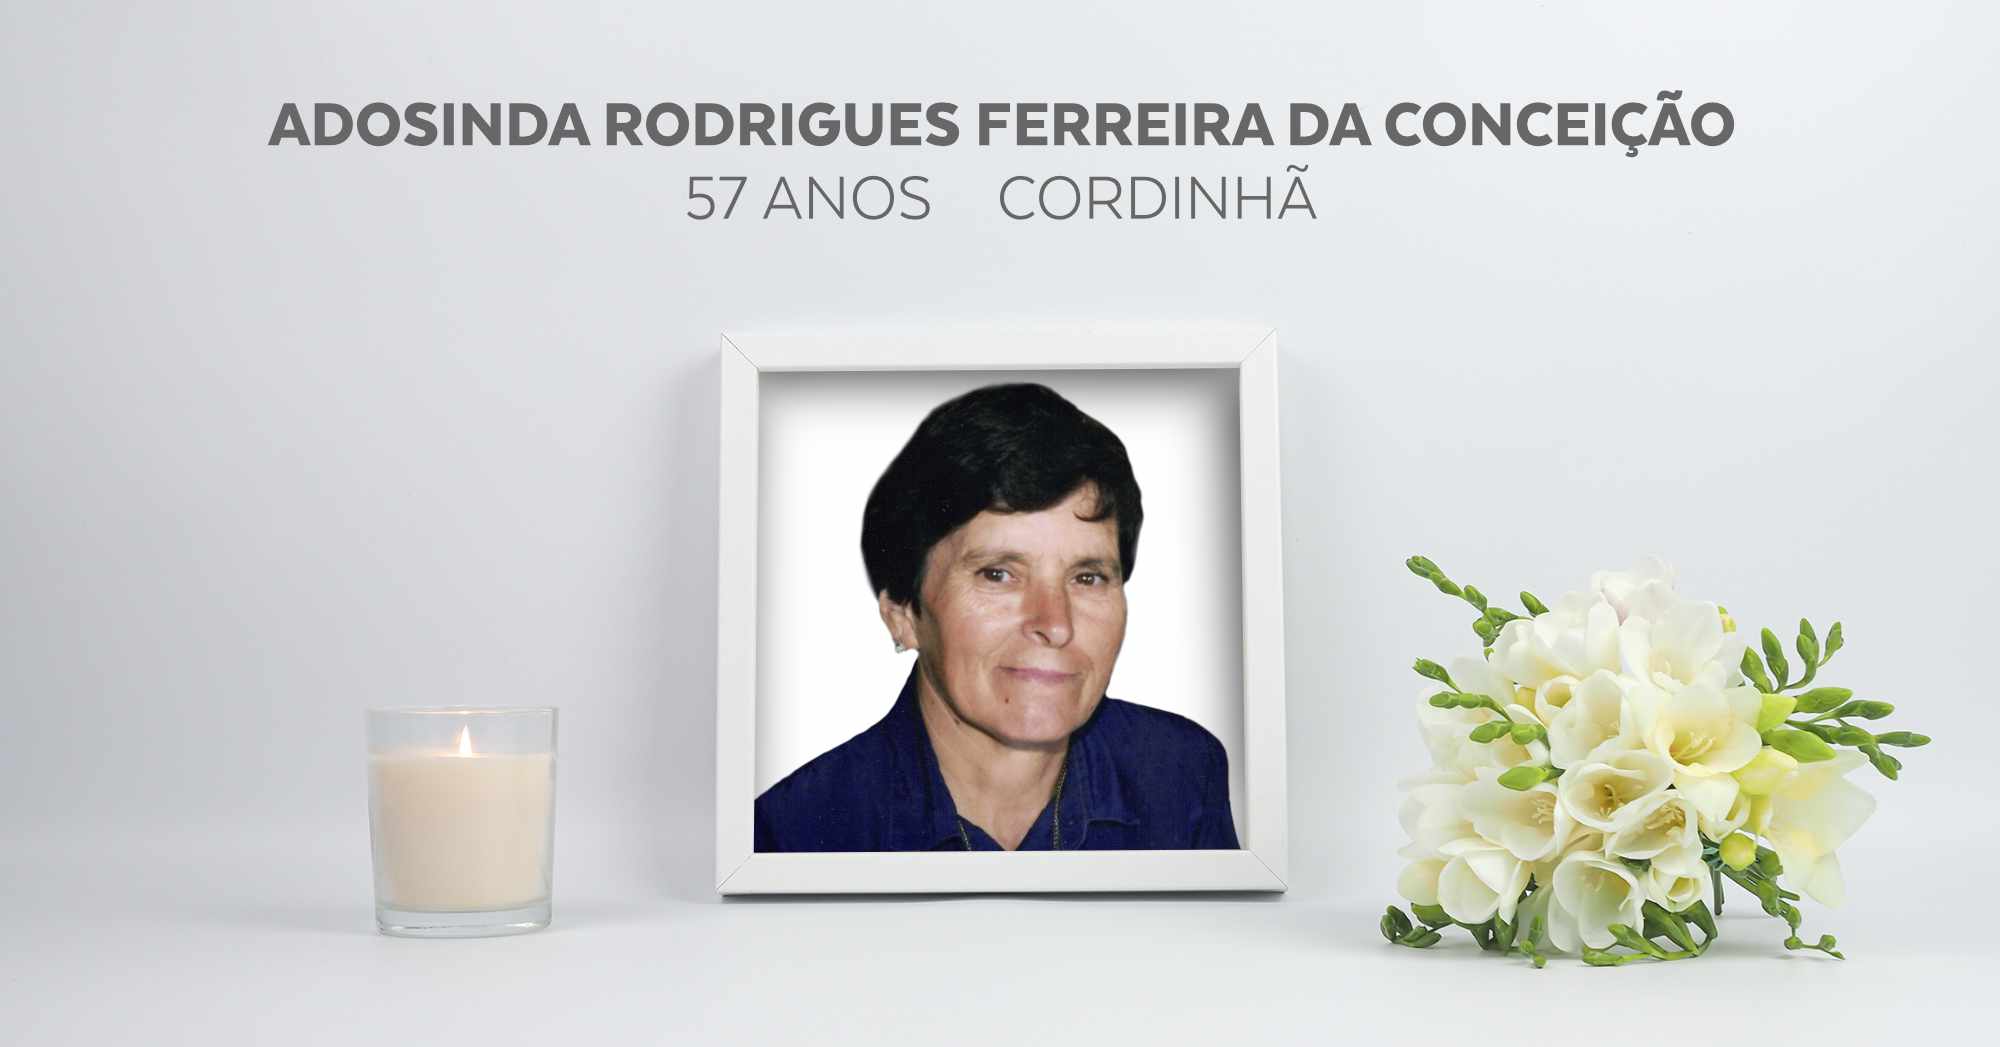 Adosinda Rodrigues Ferreira da Conceição